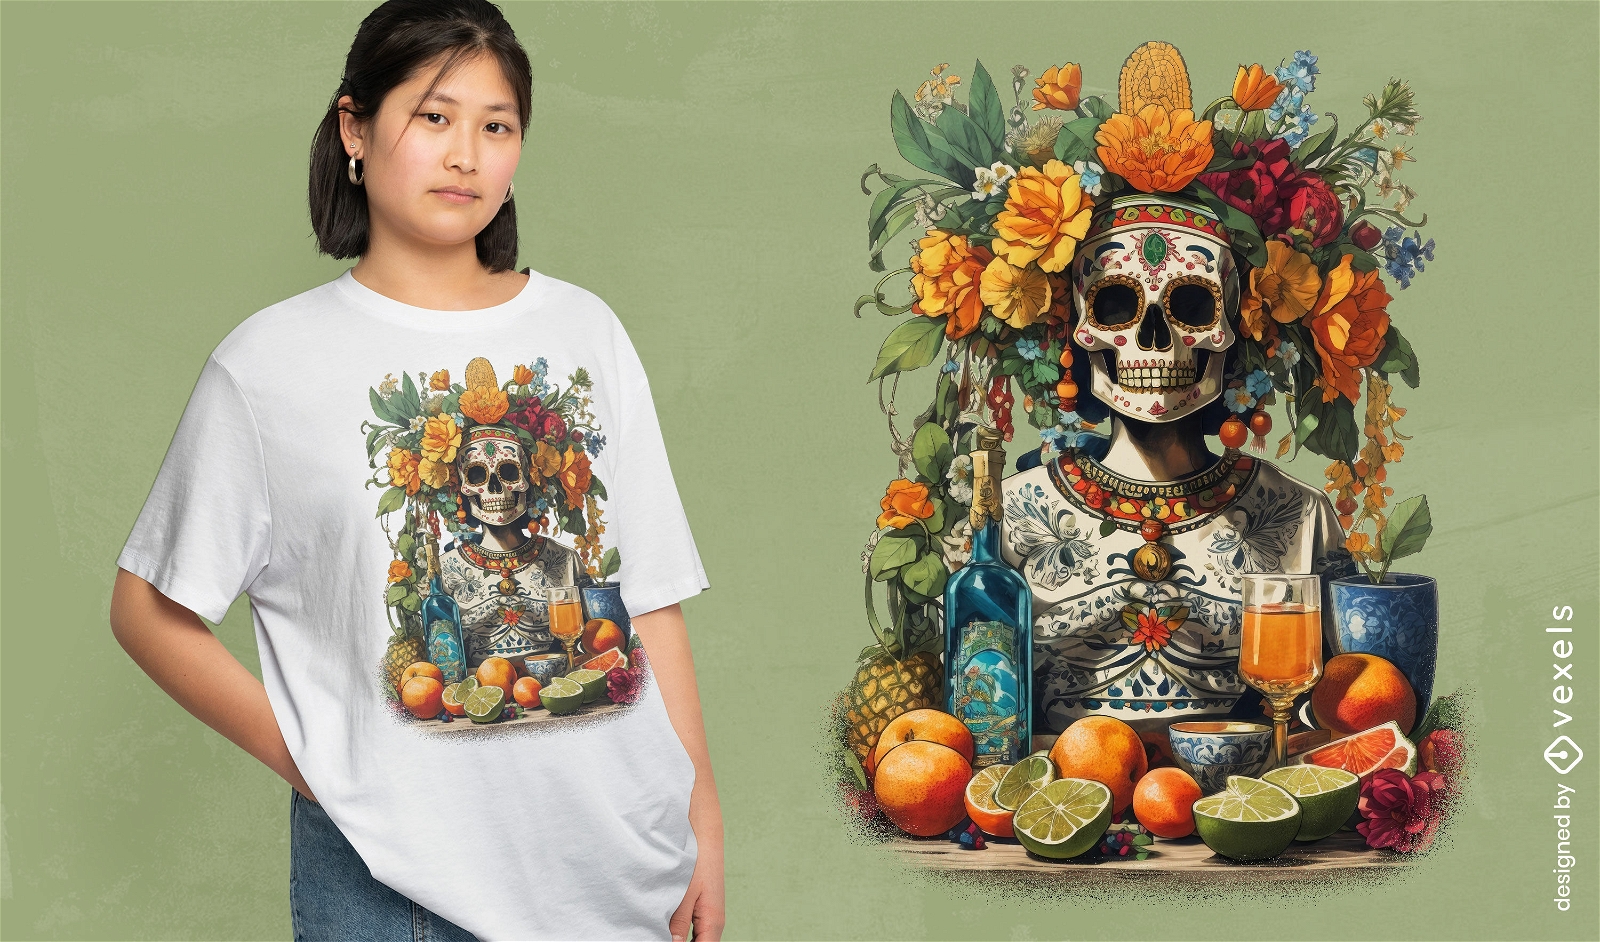 Diseño de camiseta de fiesta del día de muertos.